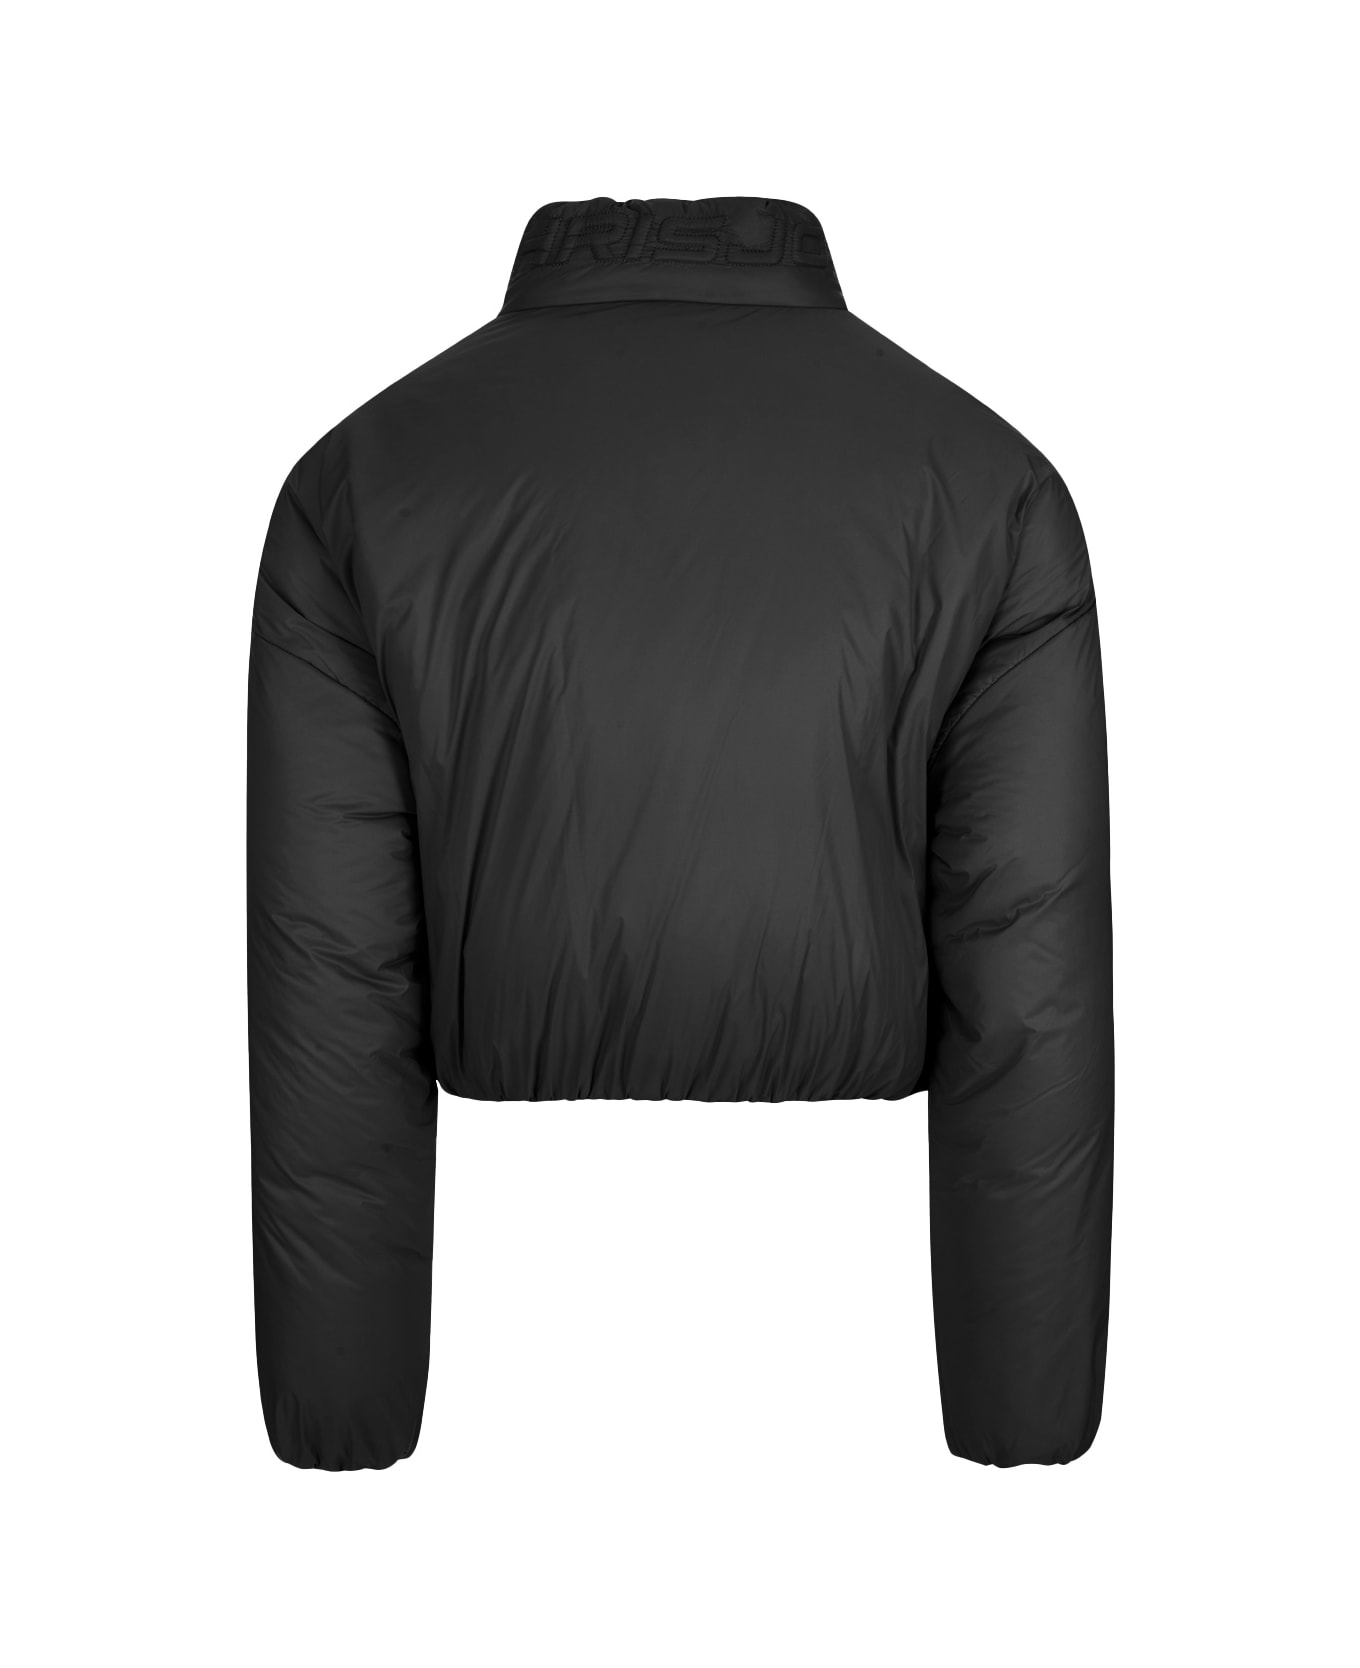 Khrisjoy Puff Joy Cropped Jacket In Black - Black ジャケット